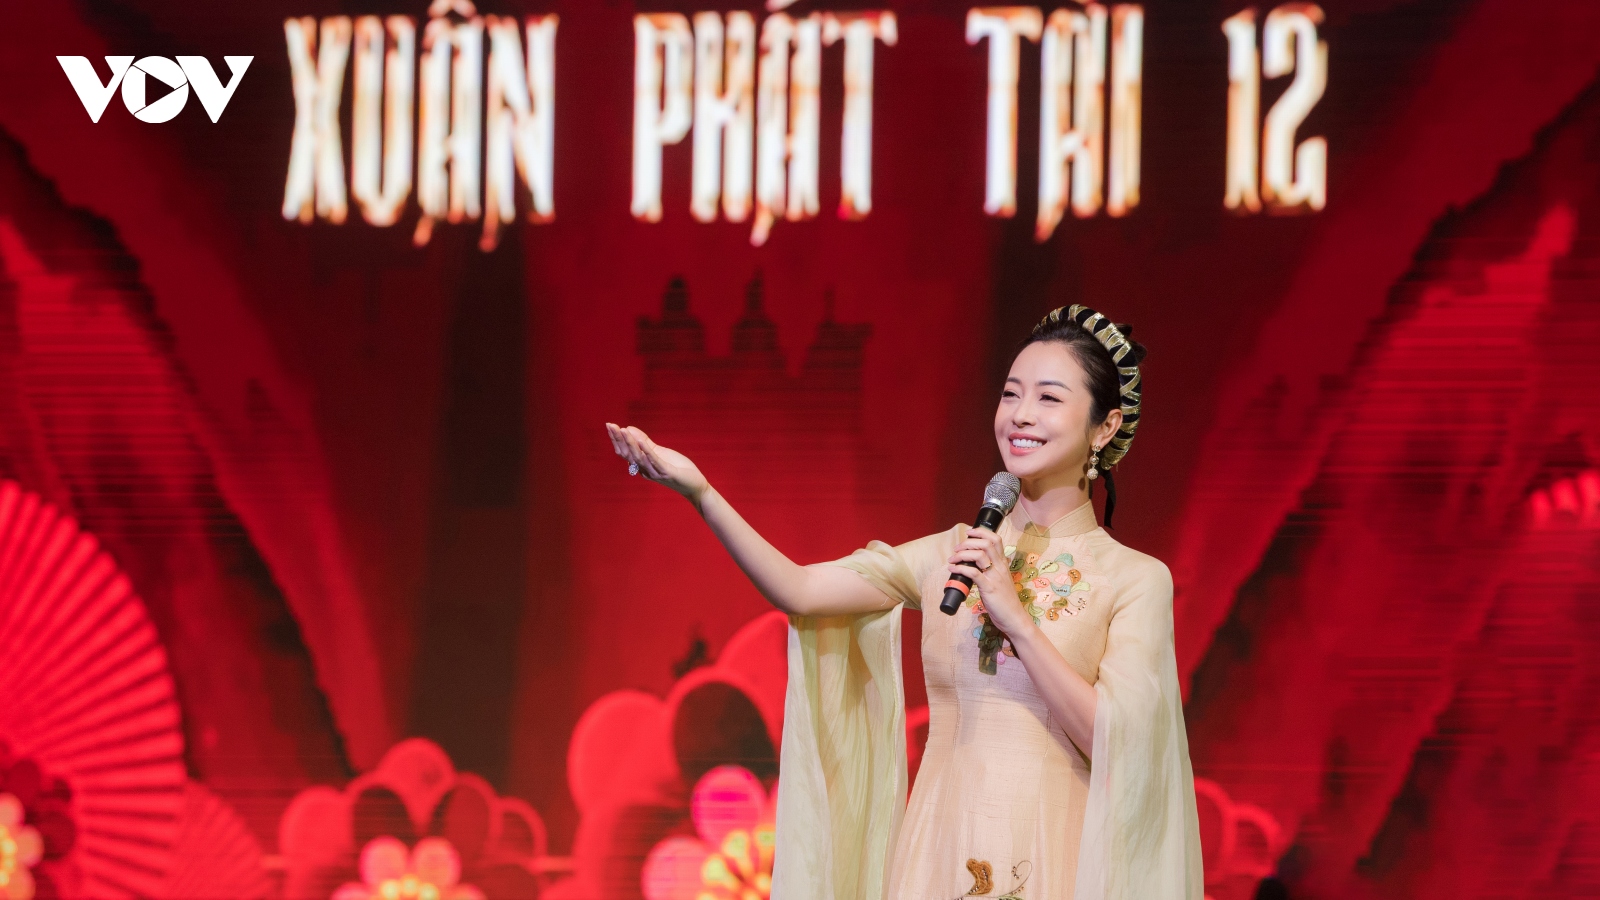 Jennifer Phạm khoe sắc rạng ngời khi làm MC chương trình "Xuân Phát Tài"